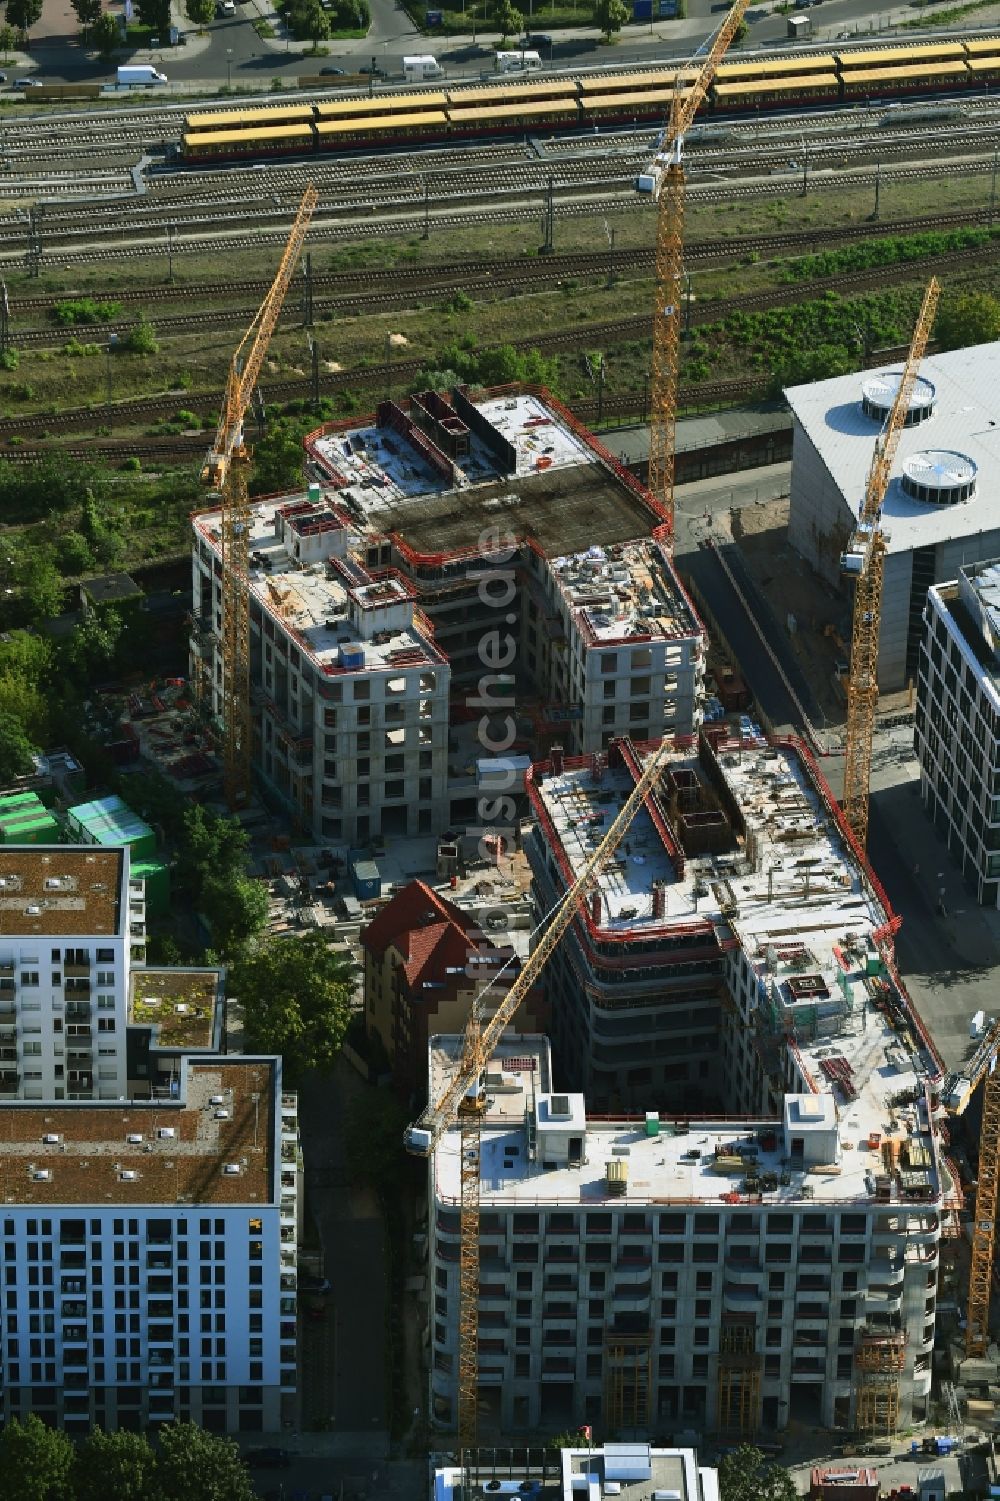 Luftbild Berlin - Baustellen zum Wohn- und Geschäftshausneubau Max & Moritz im Stadtteil Friedrichshain von Berlin